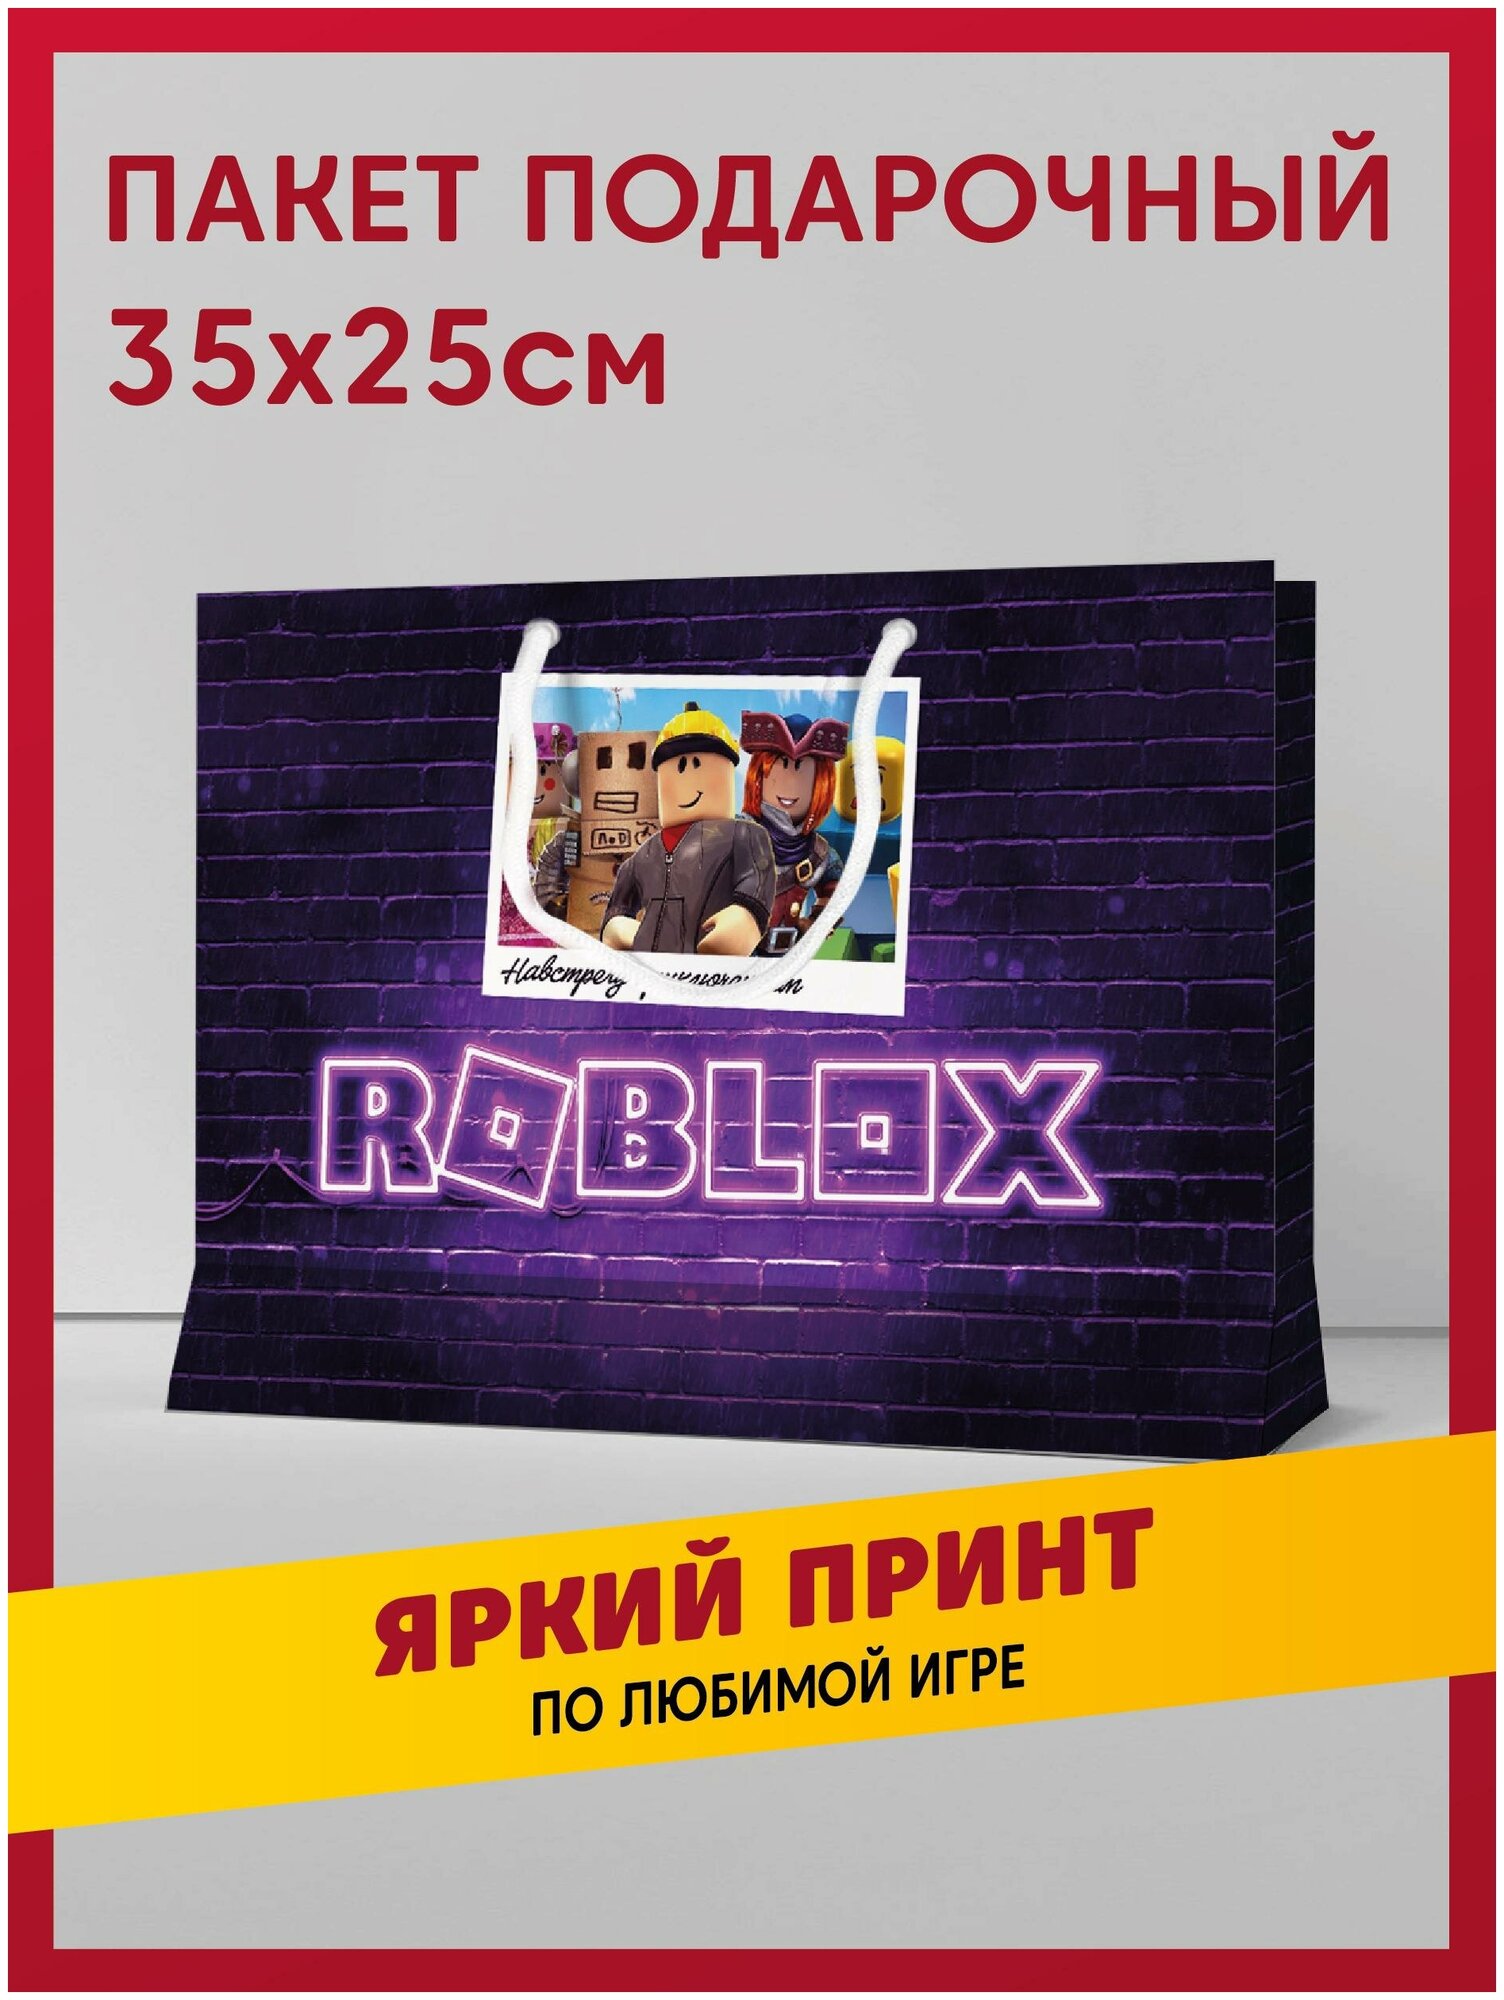 Пакет подарочный сувенирный с принтом Роблокс / ROBLOX